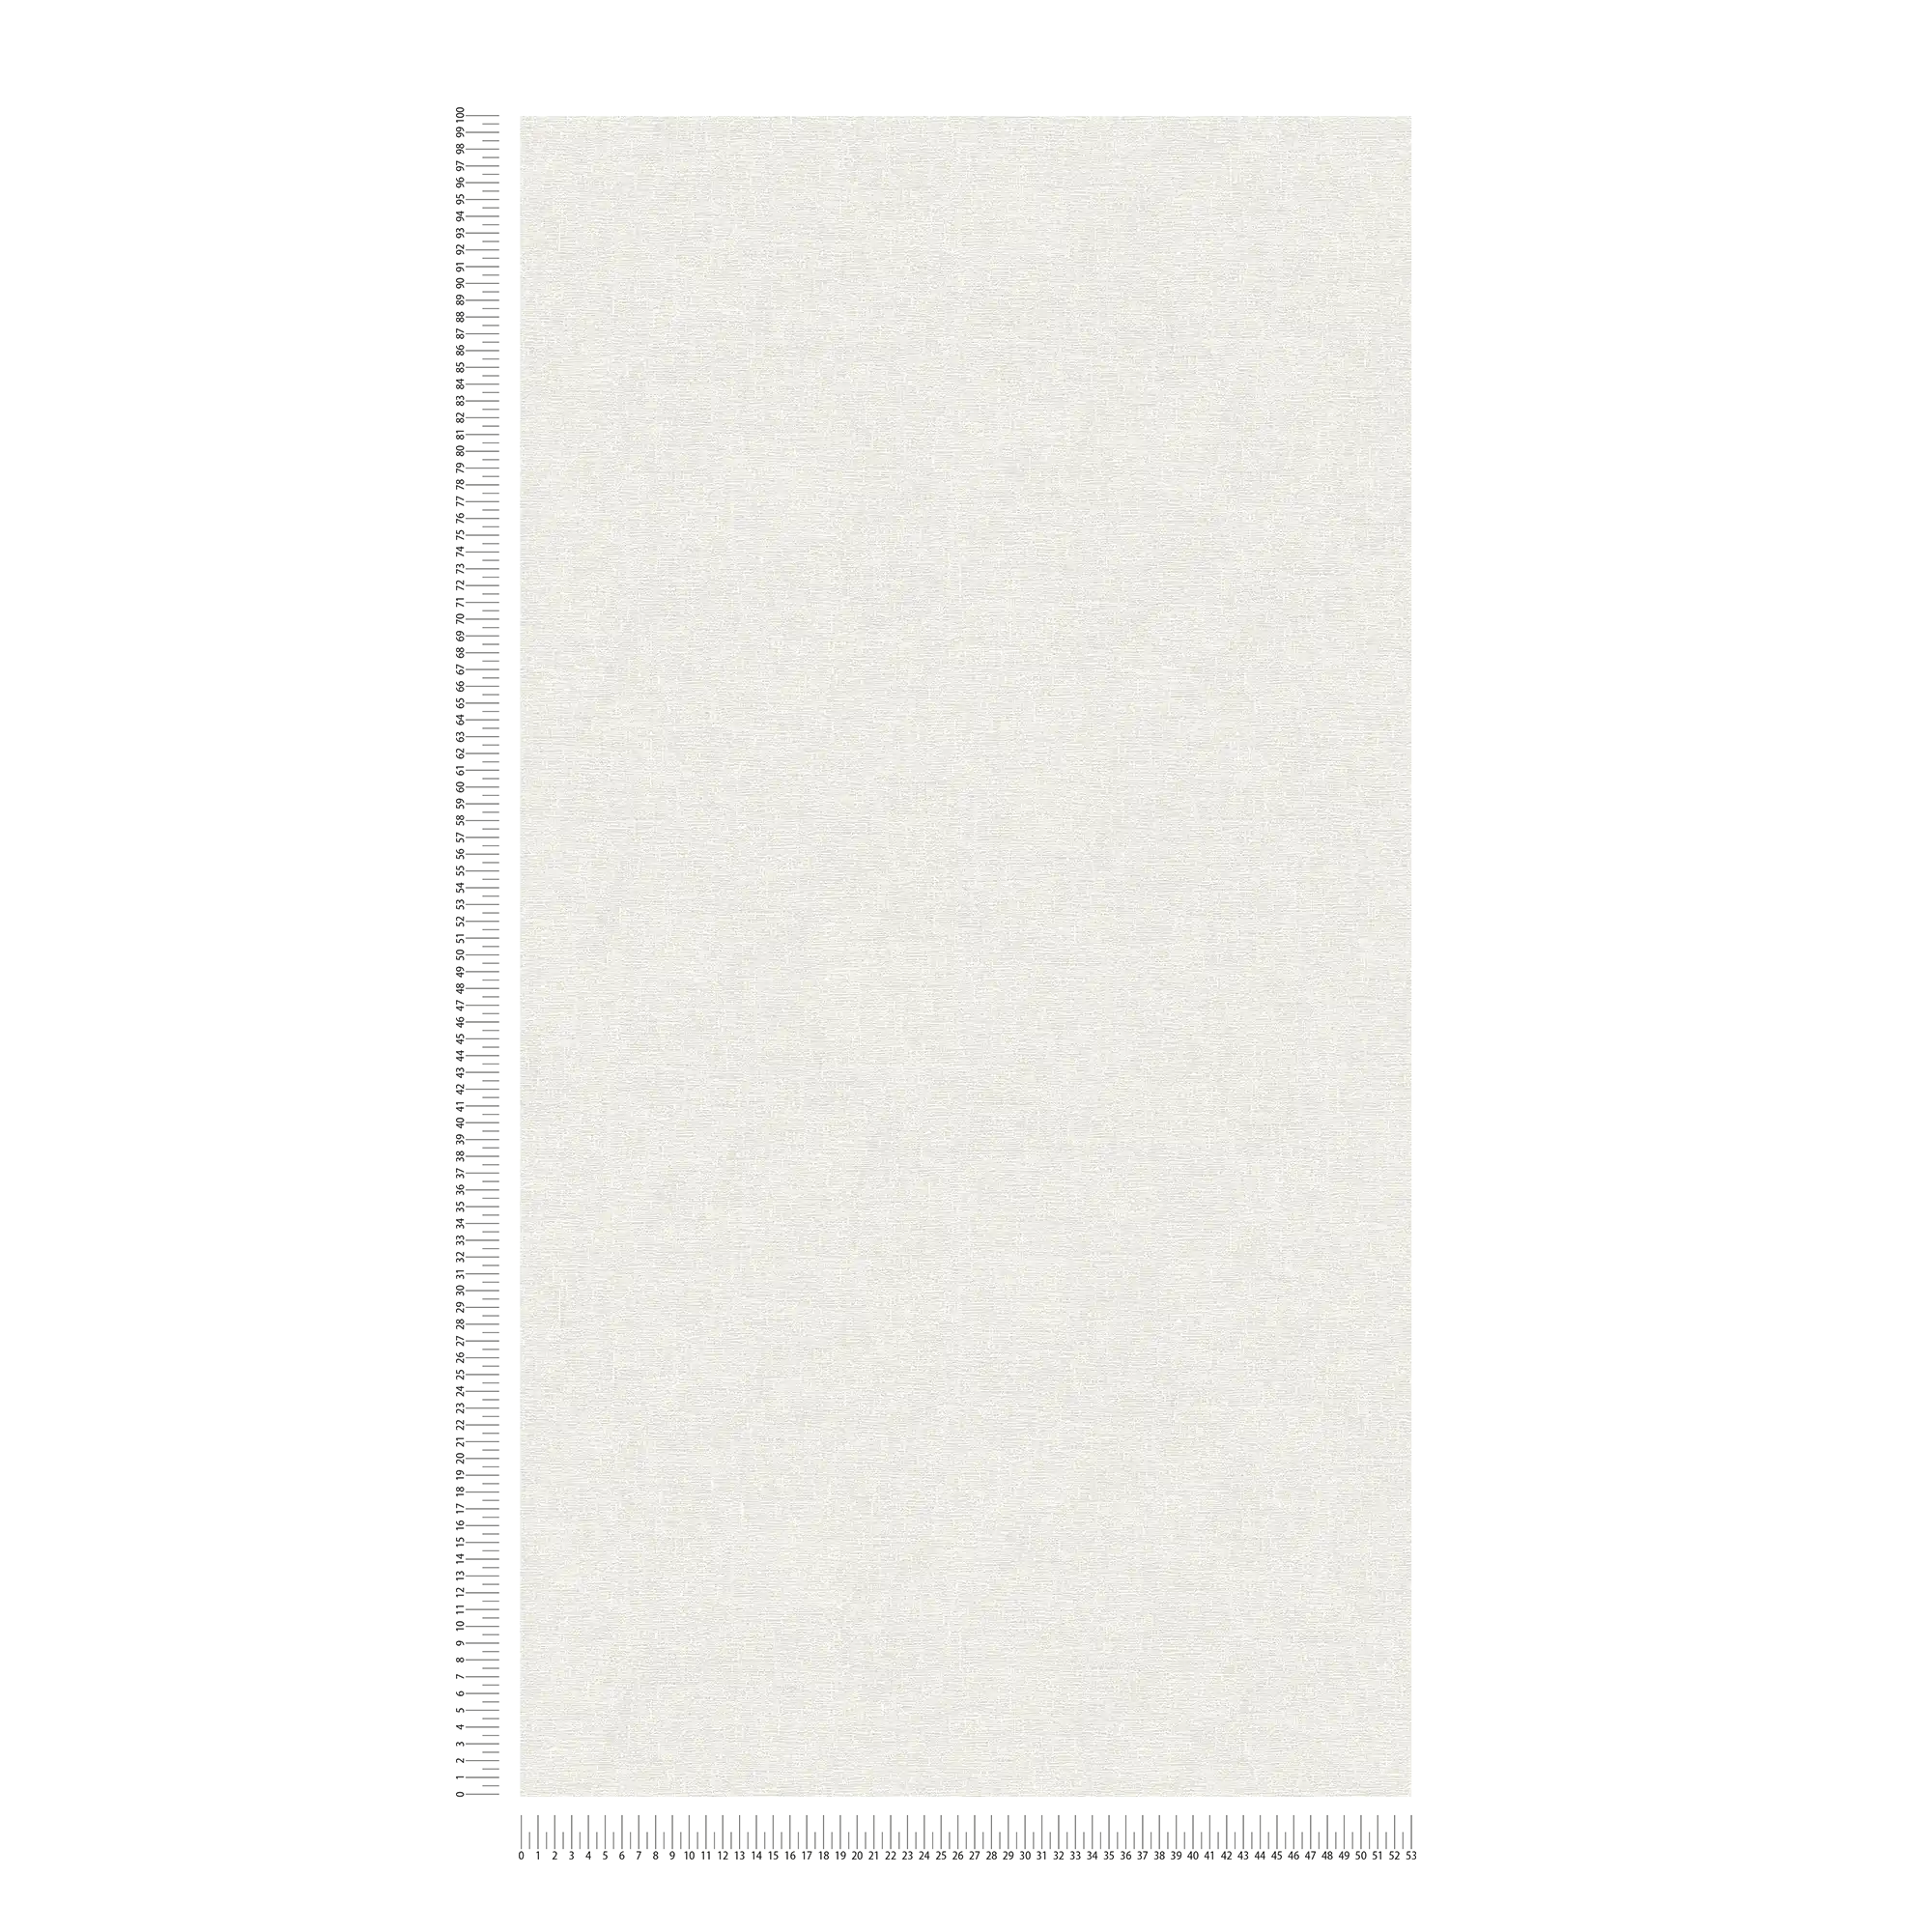             Papier peint uni blanc foncé avec motifs structurés discrets
        